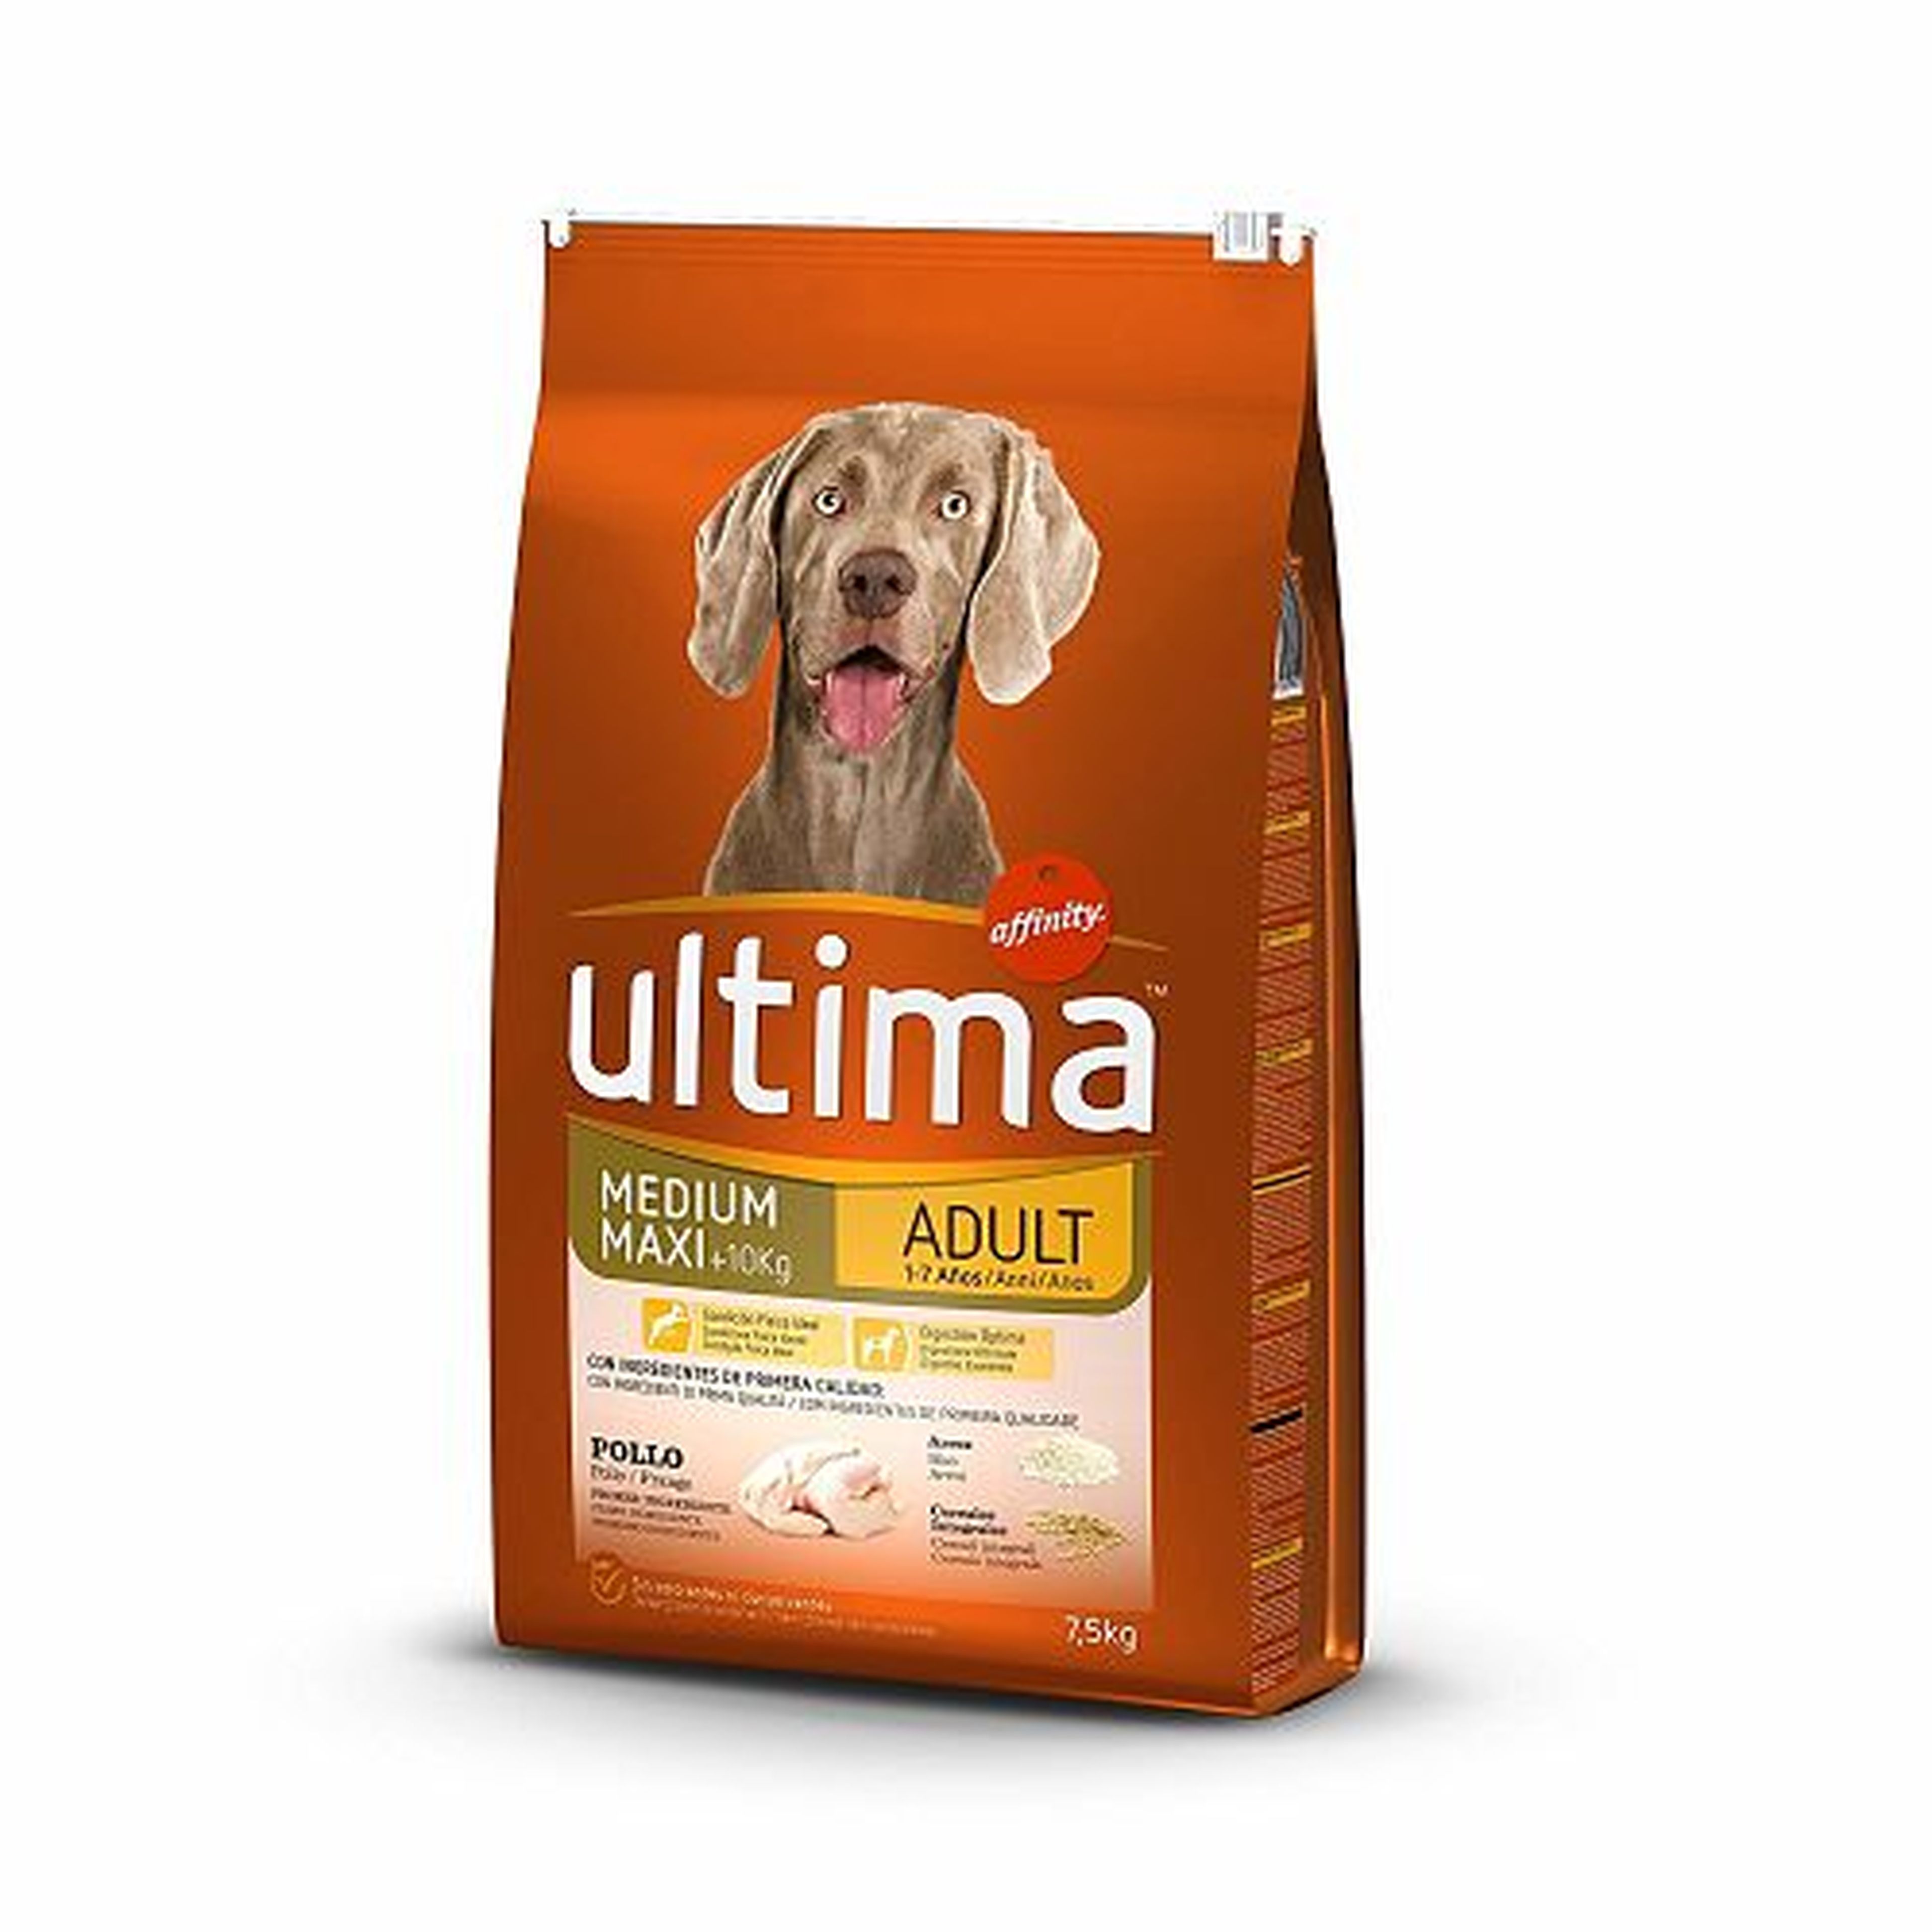 Una bolsa de 7,5 kilos de pienso para perros adultos Ultima de Affinity